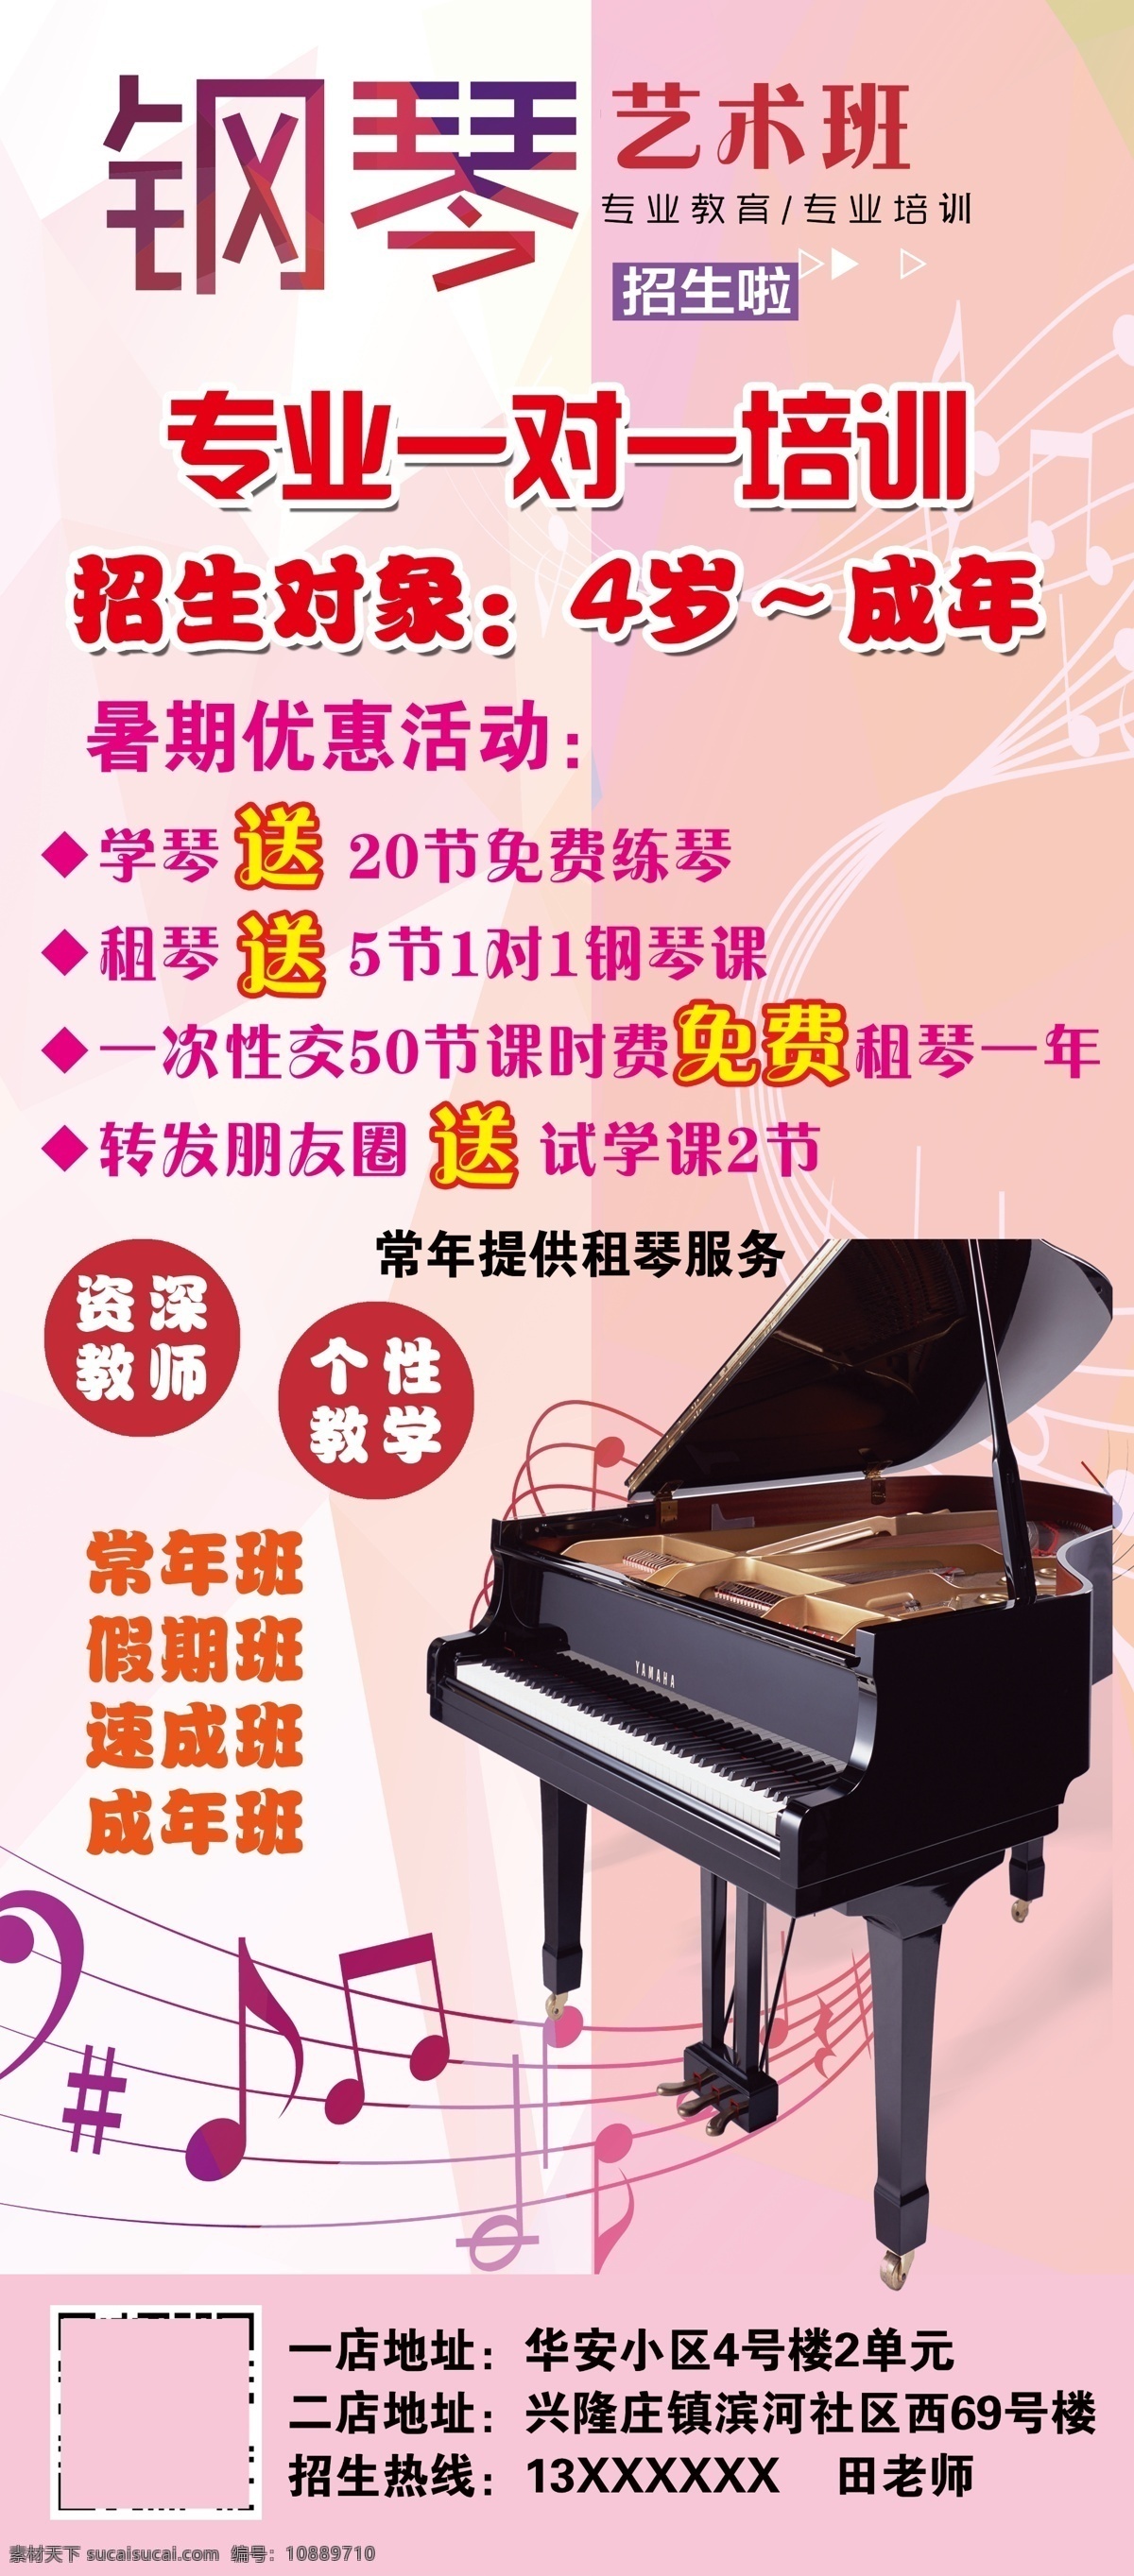 钢琴艺术班 钢琴 活动 海报 单页 招生简章 活动简章 艺术班 培训班 暑假班 分层